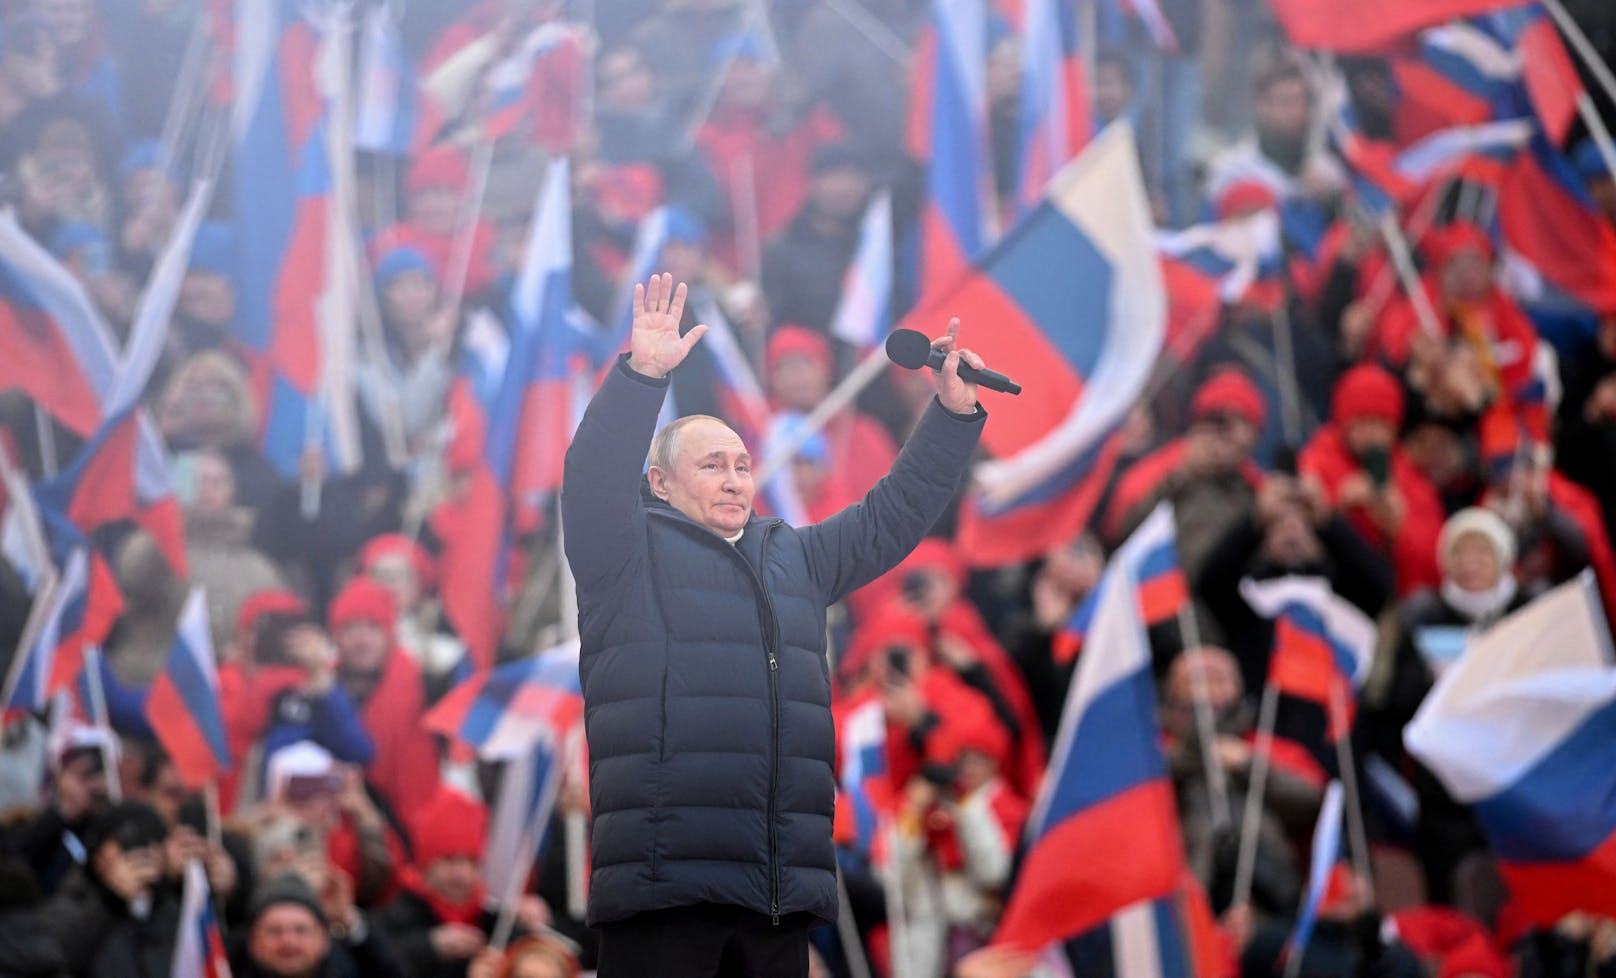 Seine Rede vor Zehntausenden demonstrativ jubelnden Menschen im Moskauer Luschniki-Stadion wurde zum PR-Disaster für Wladimir Putin.